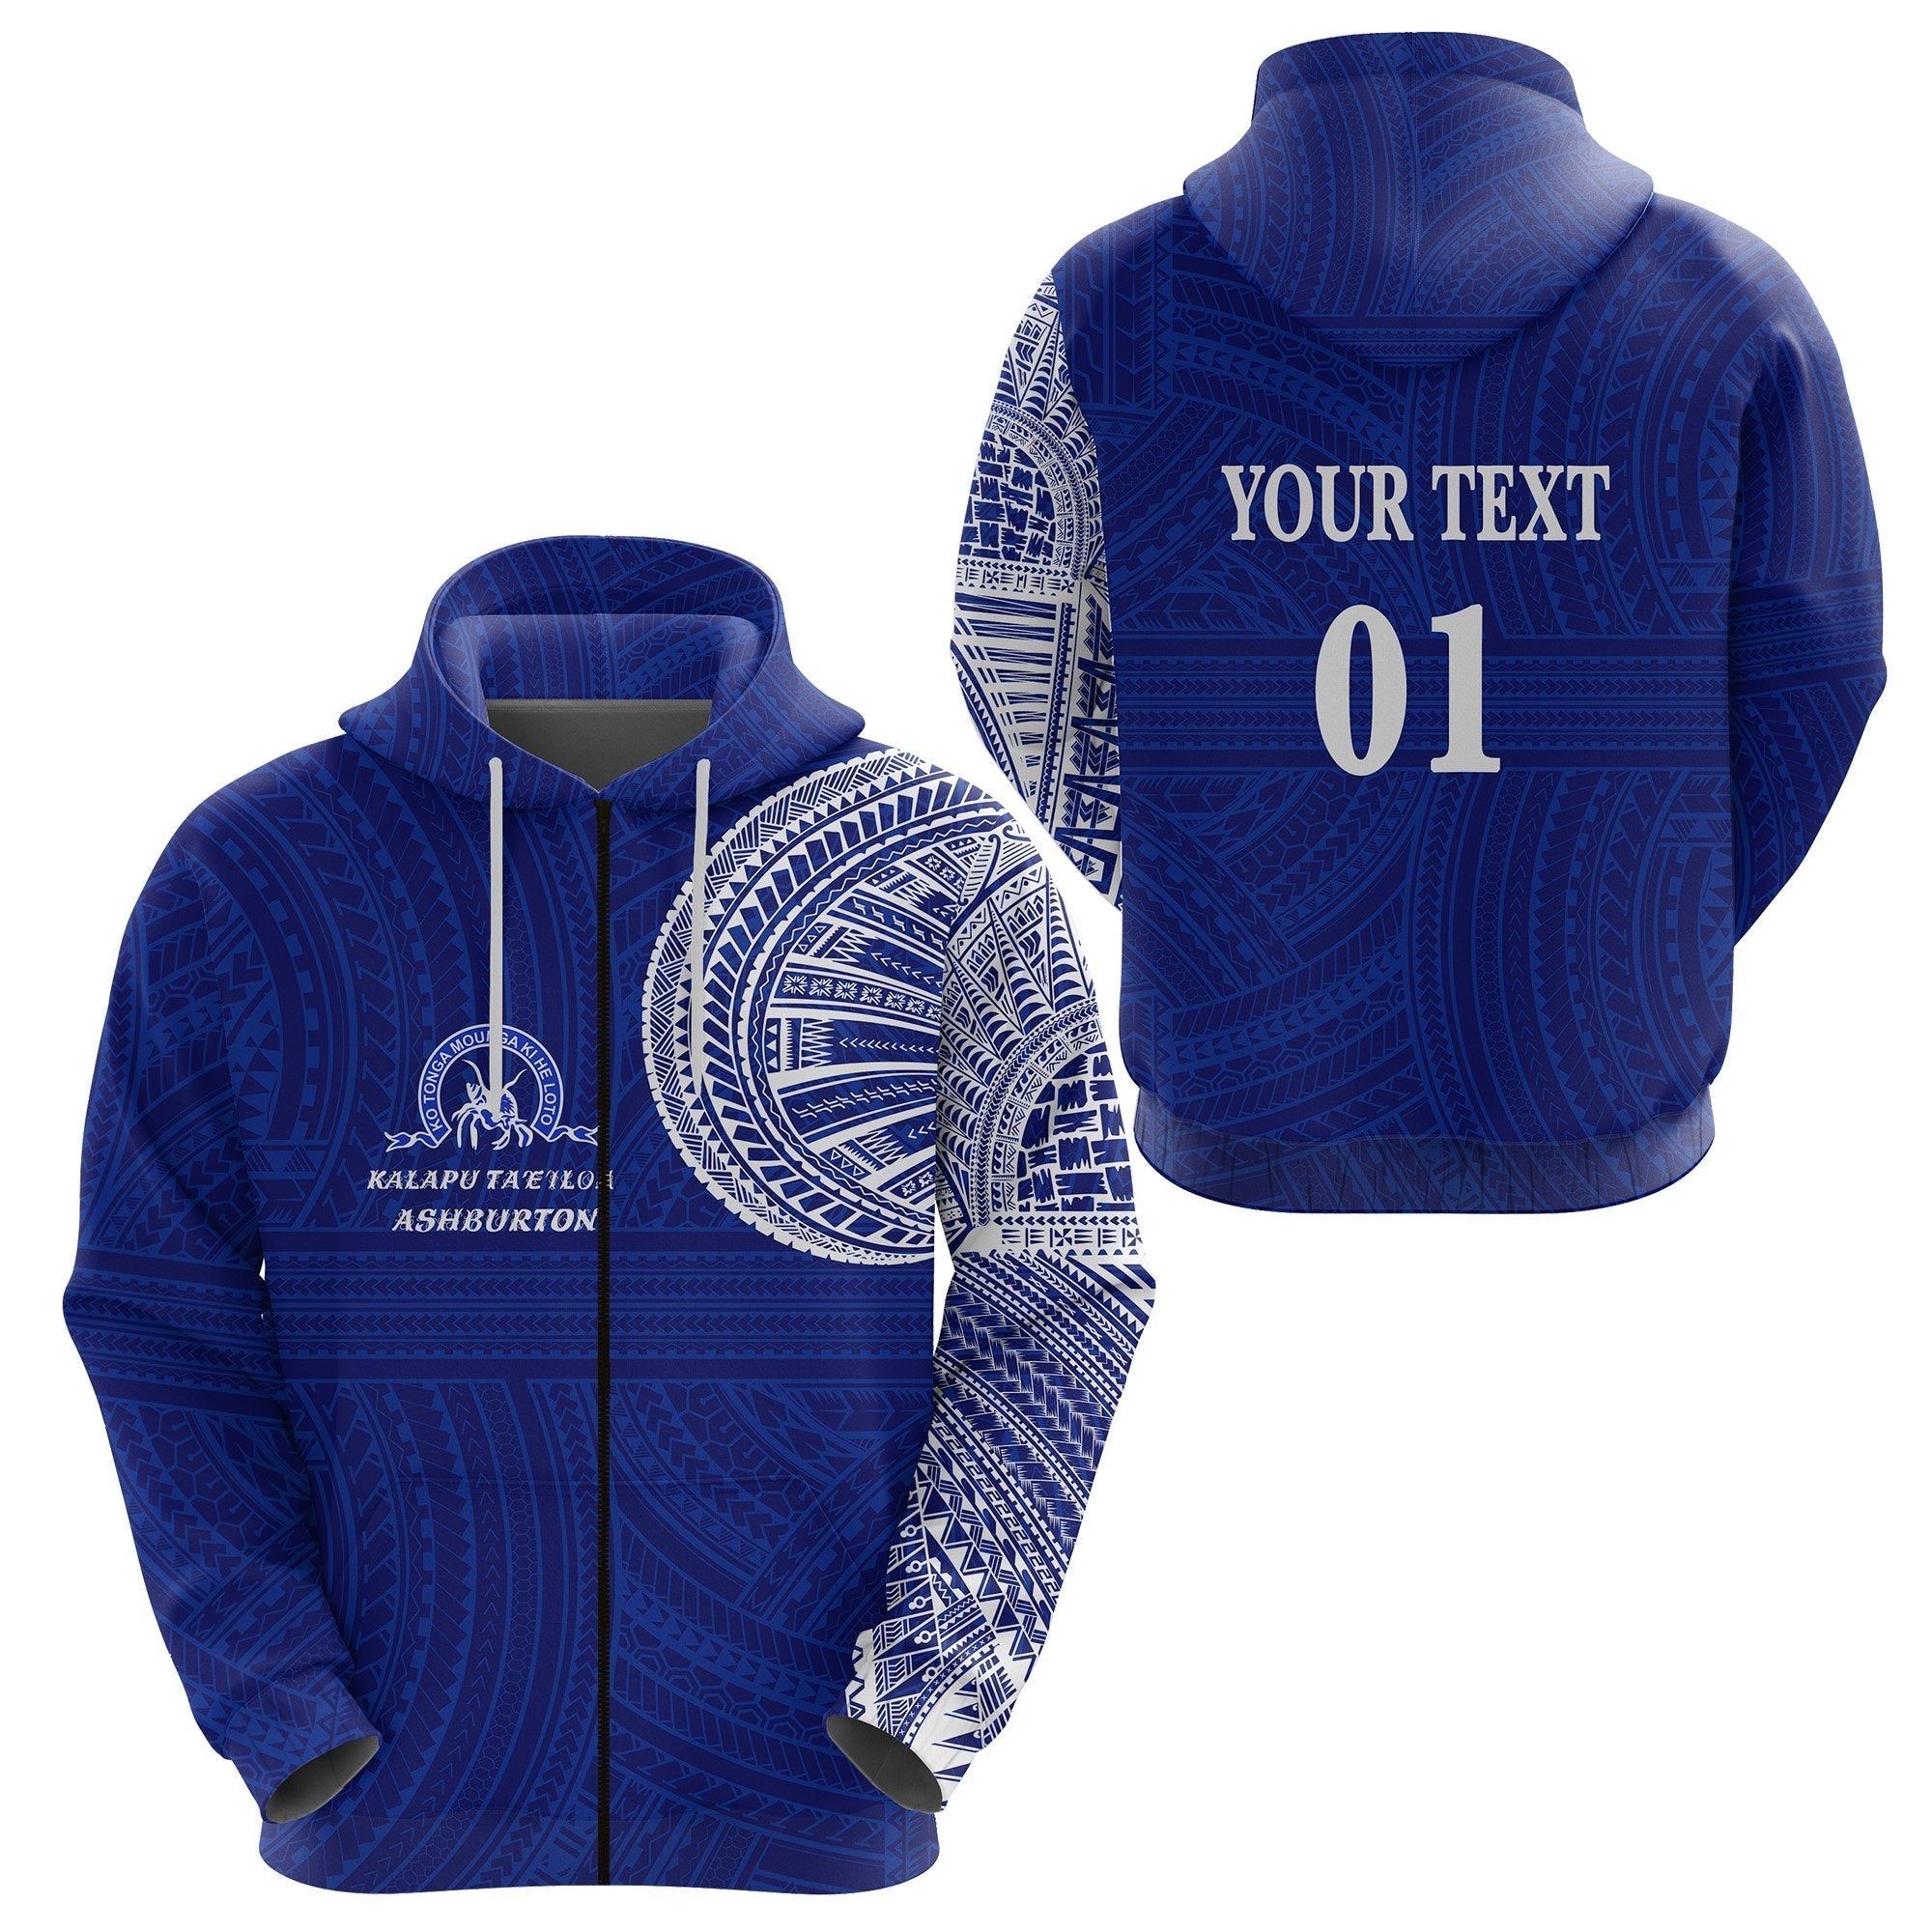 custom-personalised-ko-tonga-zip-hoodie-kalapu-taeiloa-ashburton-custom-text-and-number